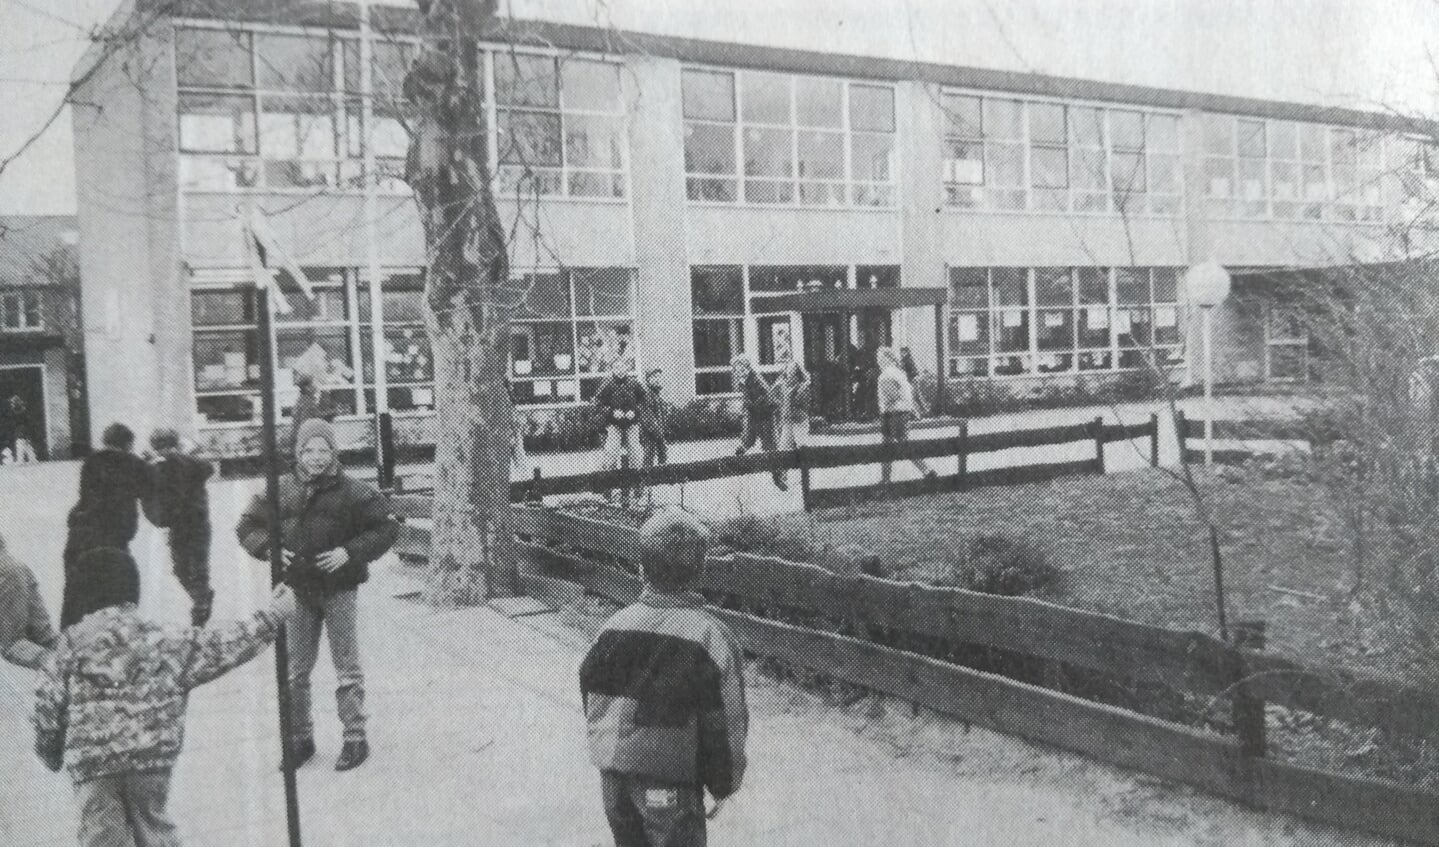 De Minister de Visserschool, in 1993, jaar van de fusie met de Savornin Lohmanschool: De Werveling.